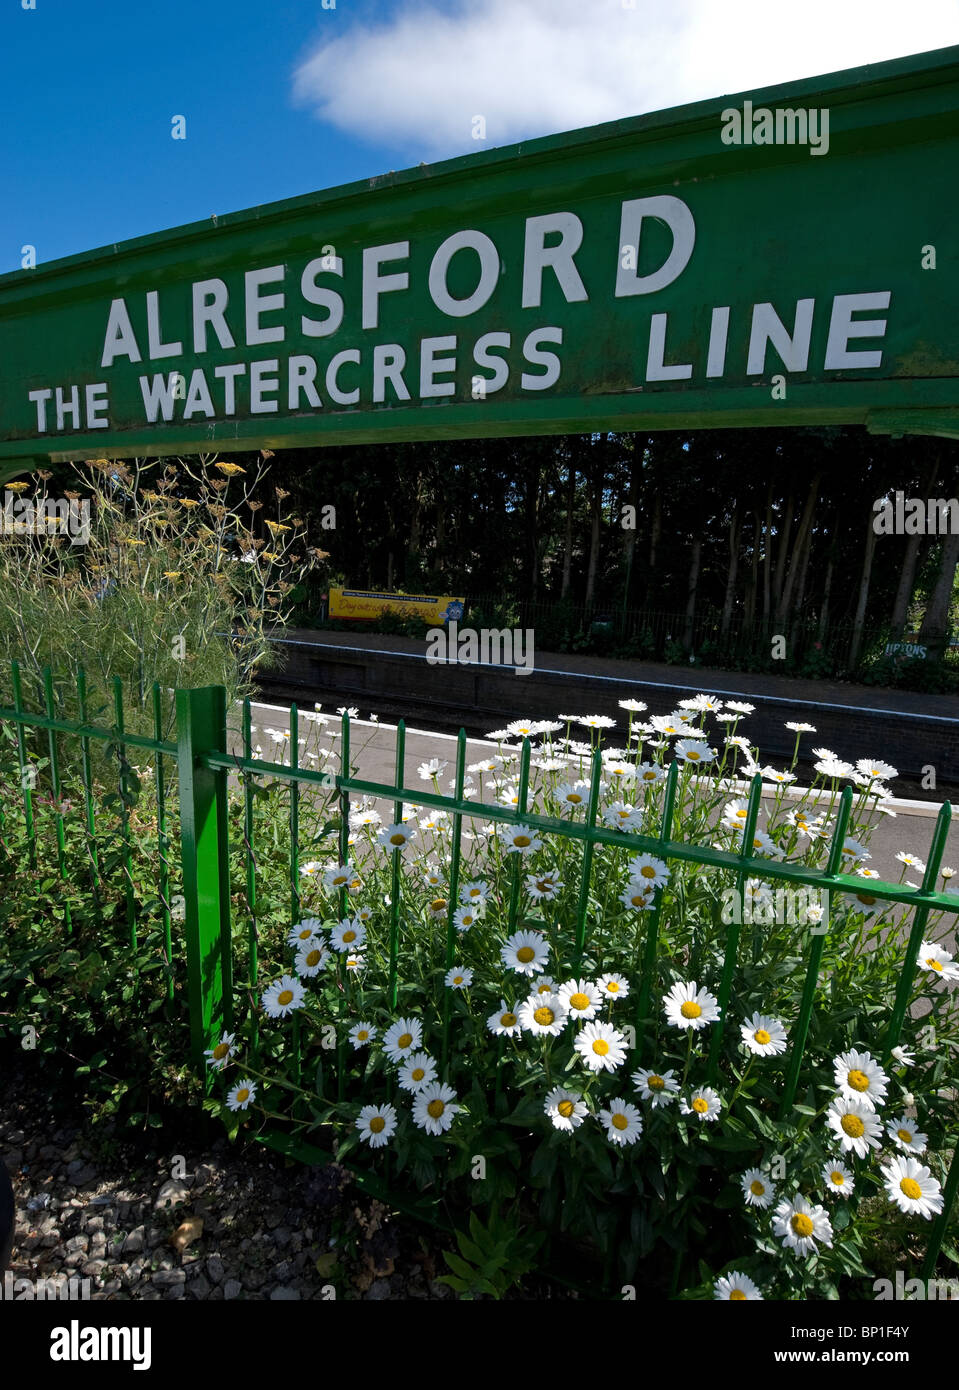 Bahnhof Alresford unterzeichnen die Brunnenkresse-Linie Stockfoto